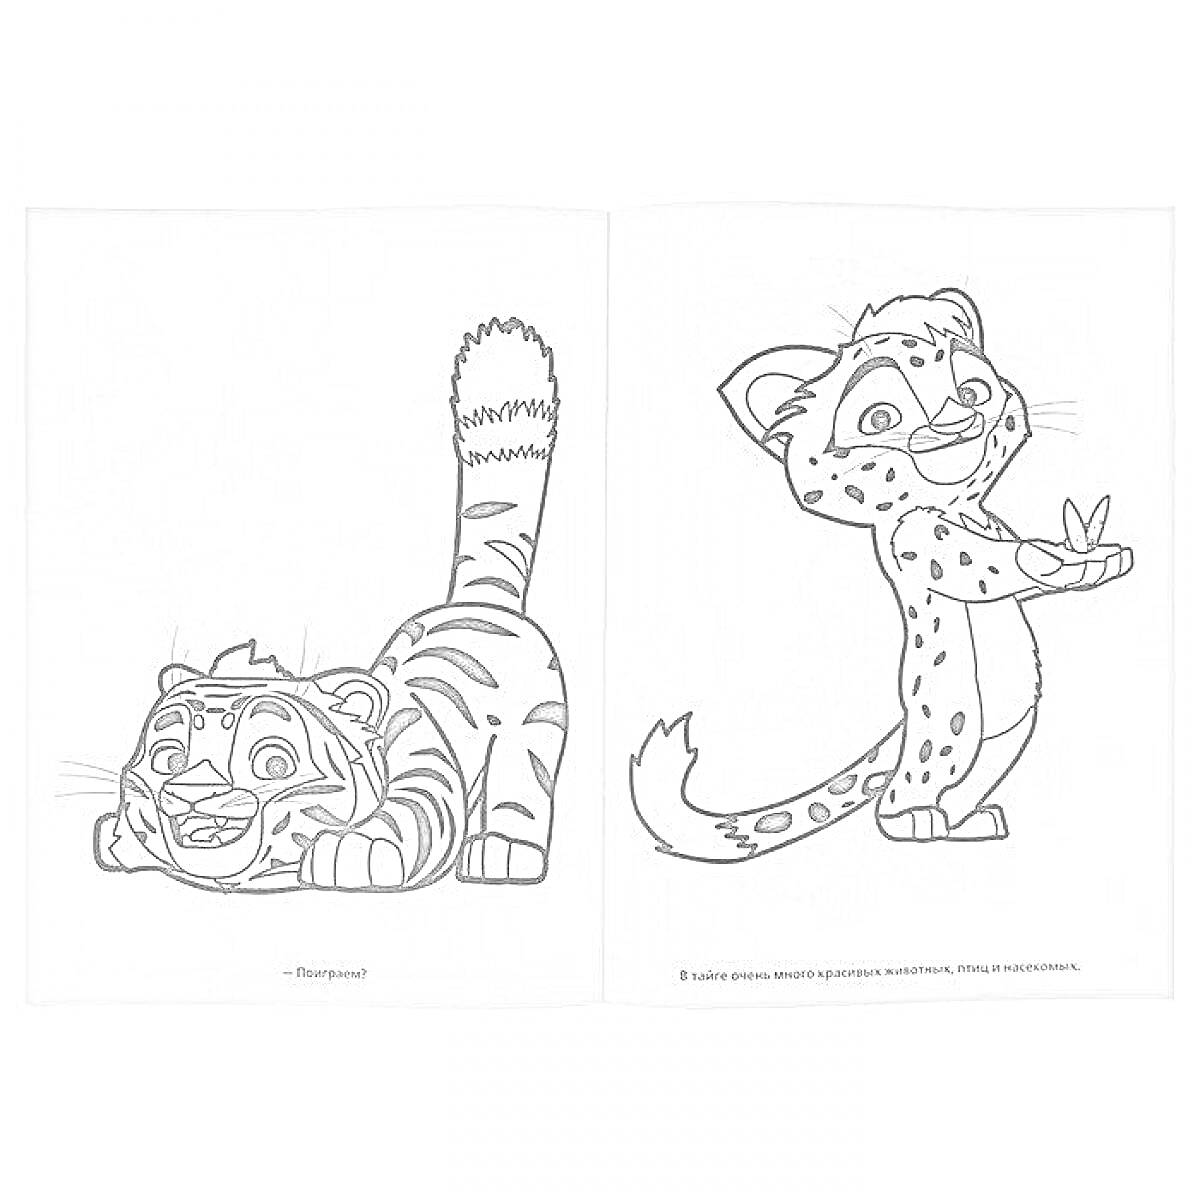 Раскраска Лео и тиг раскраска: тигр и леопард на двух страницах раскраски